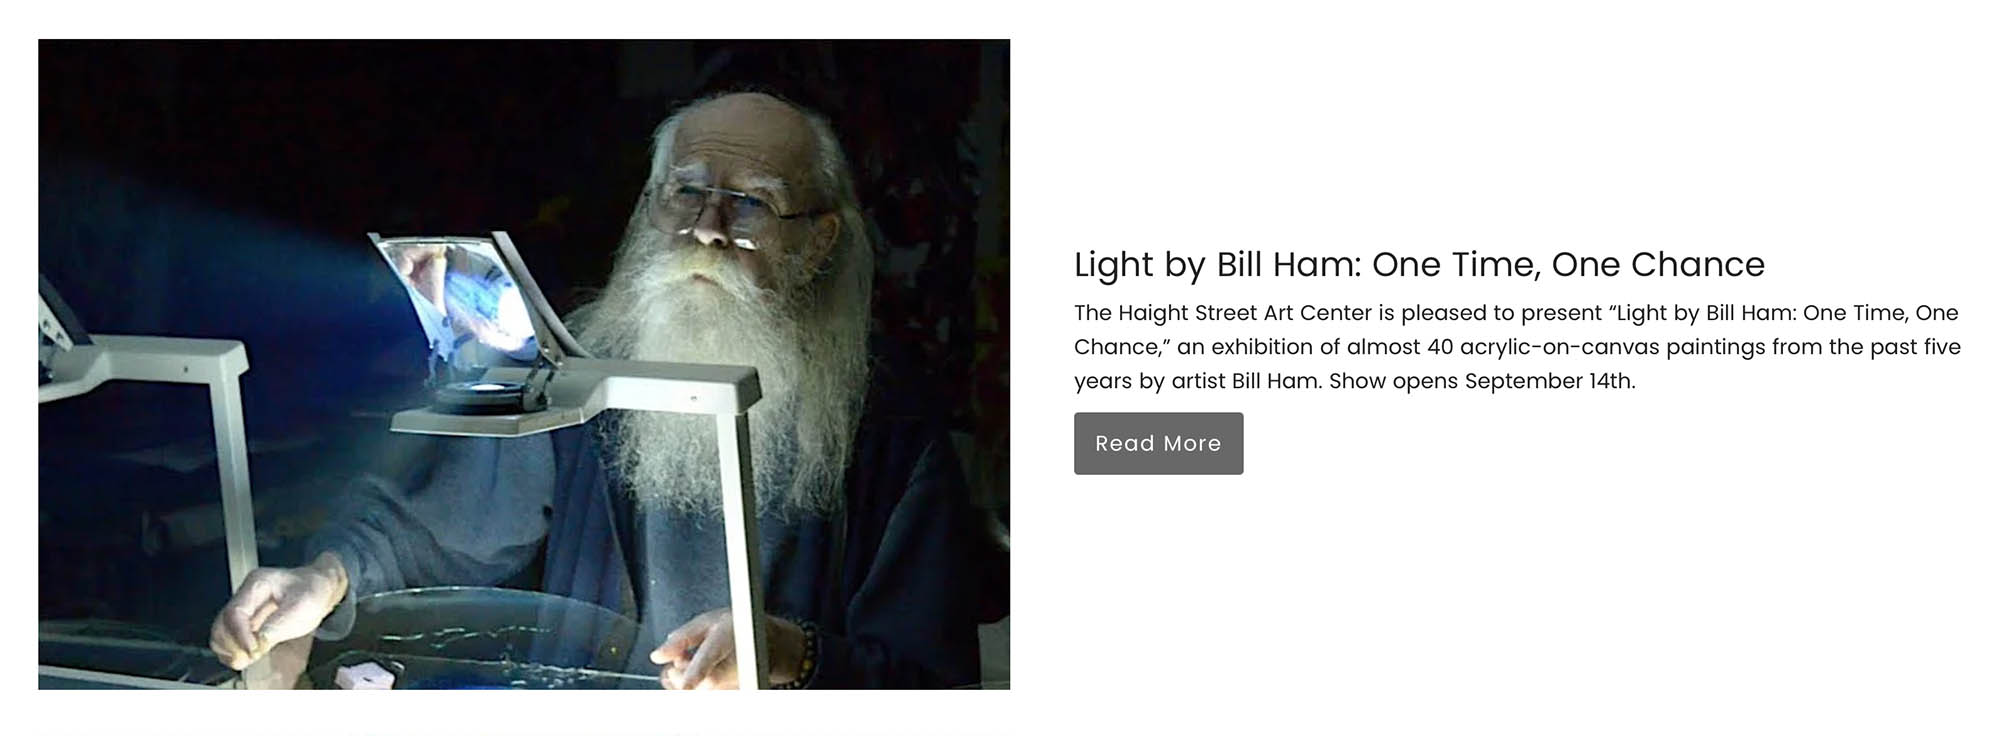 Bill Ham Show Haight St Art Center Website Screen Shot